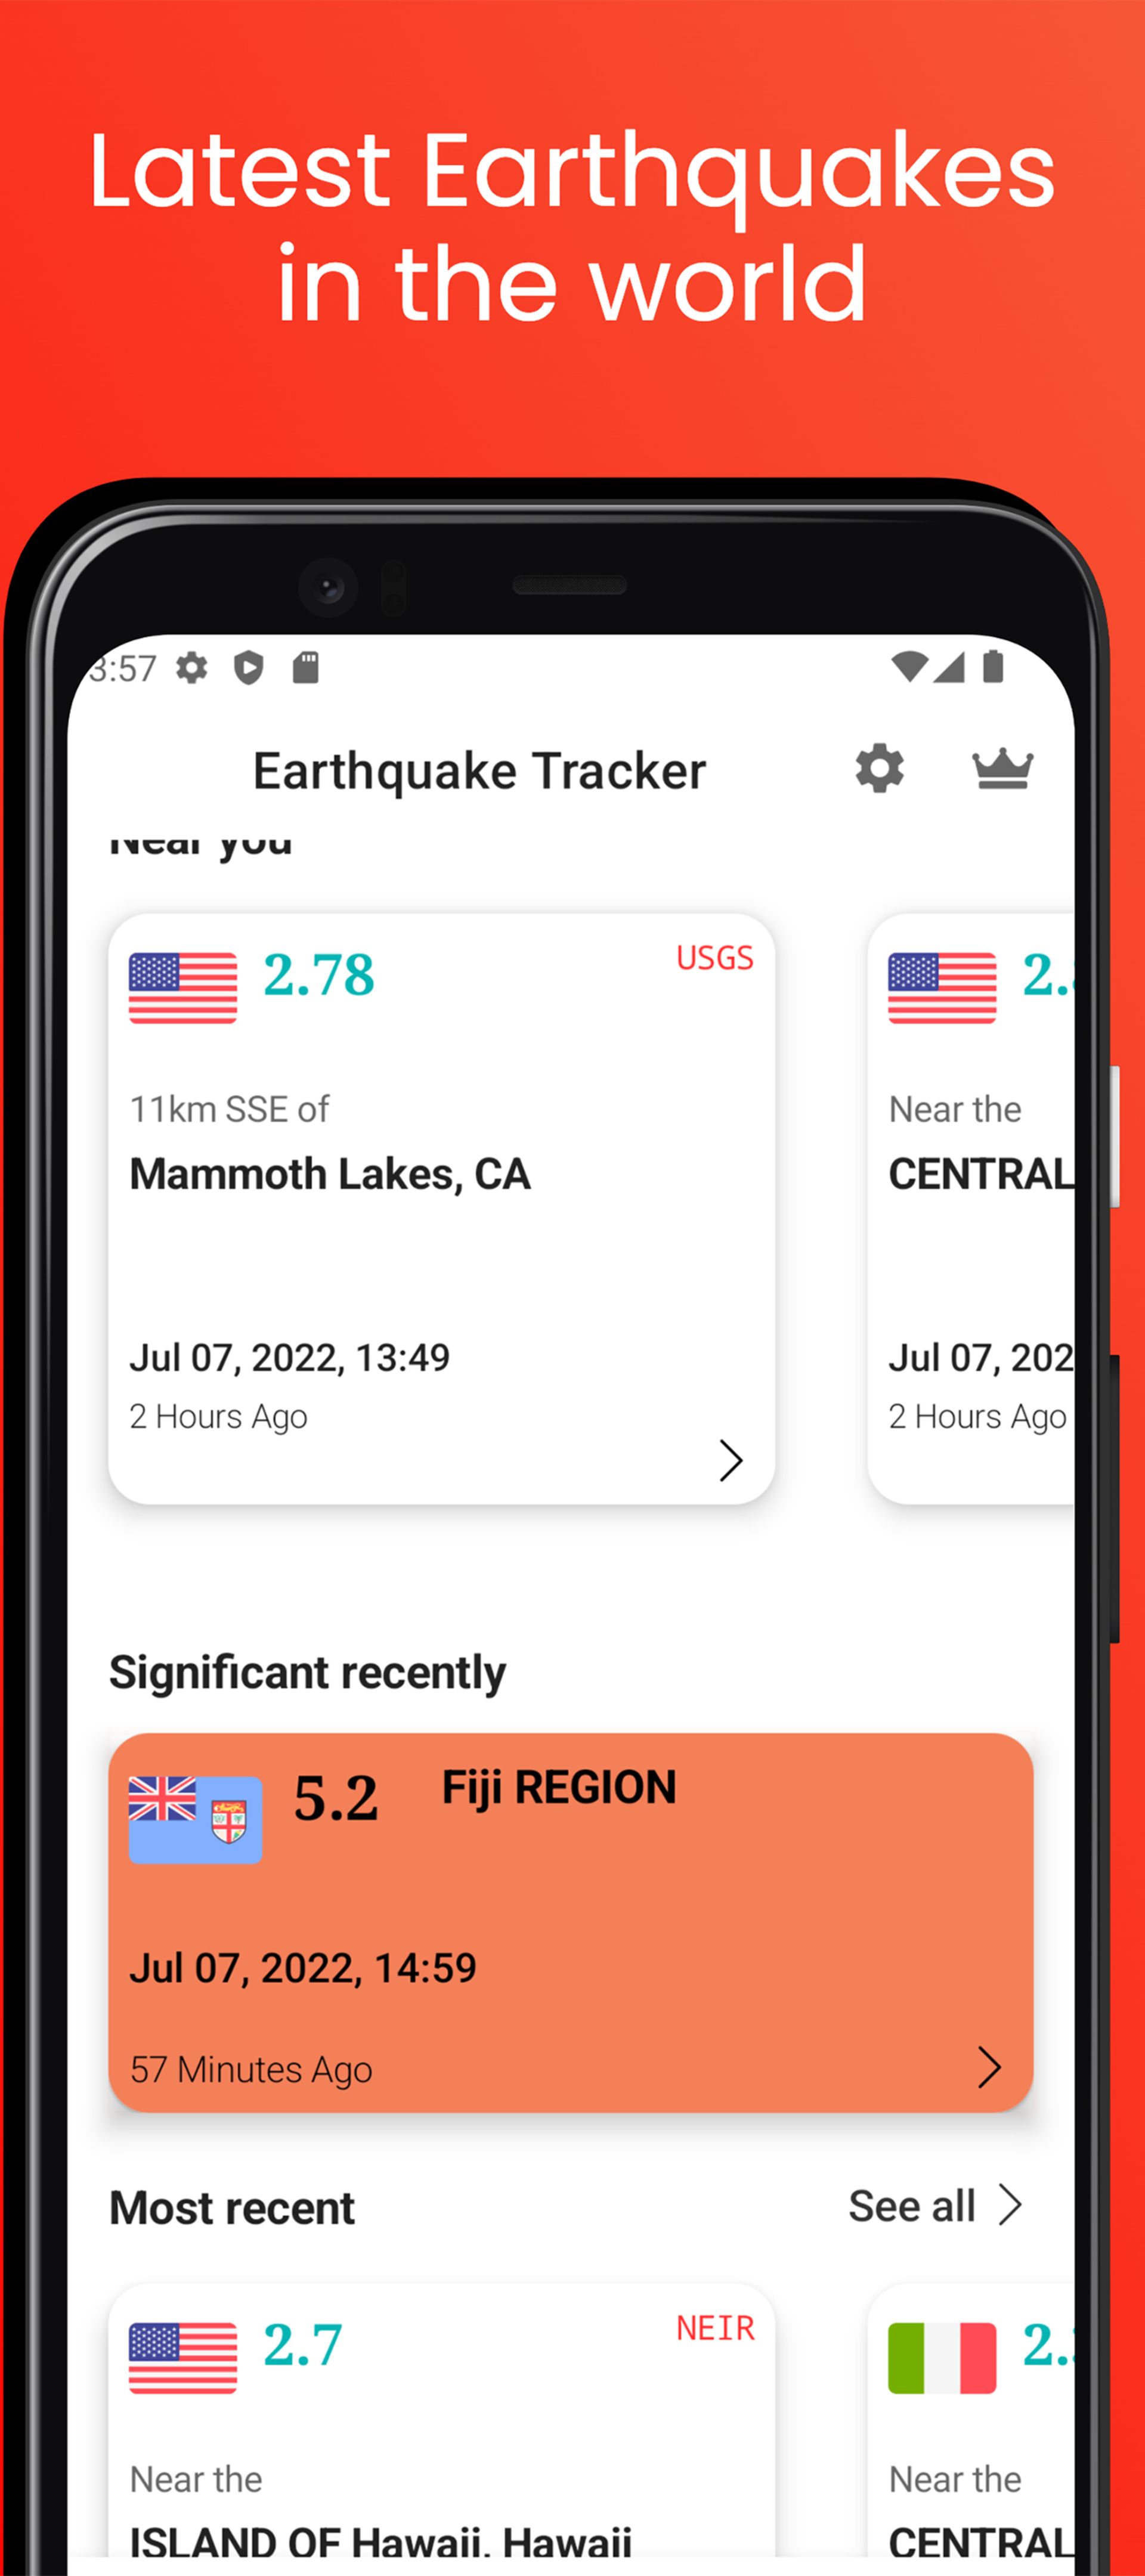 اطلاعات مربوط به زلزله های مختلف در کارت های مختلف نشان داده شده اند